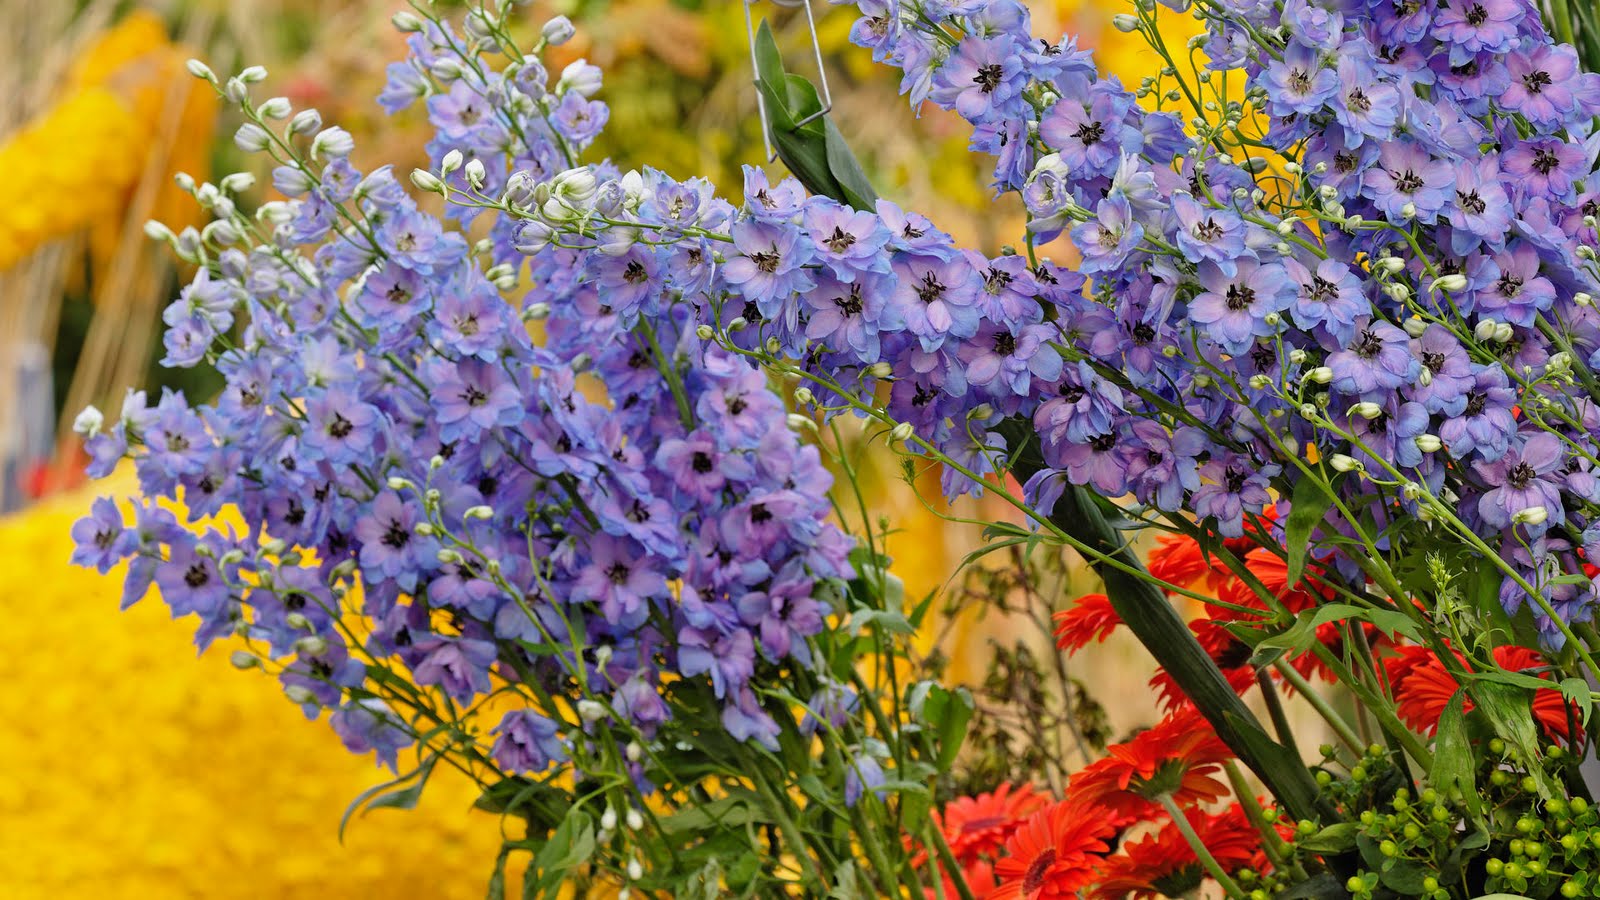 http://2.bp.blogspot.com/-0wyu6EexfkE/ThHx25Fc9aI/AAAAAAAAFGw/5xJX7agcfww/s1600/Flores+del+jardin-Garden+Flowers---2.jpg